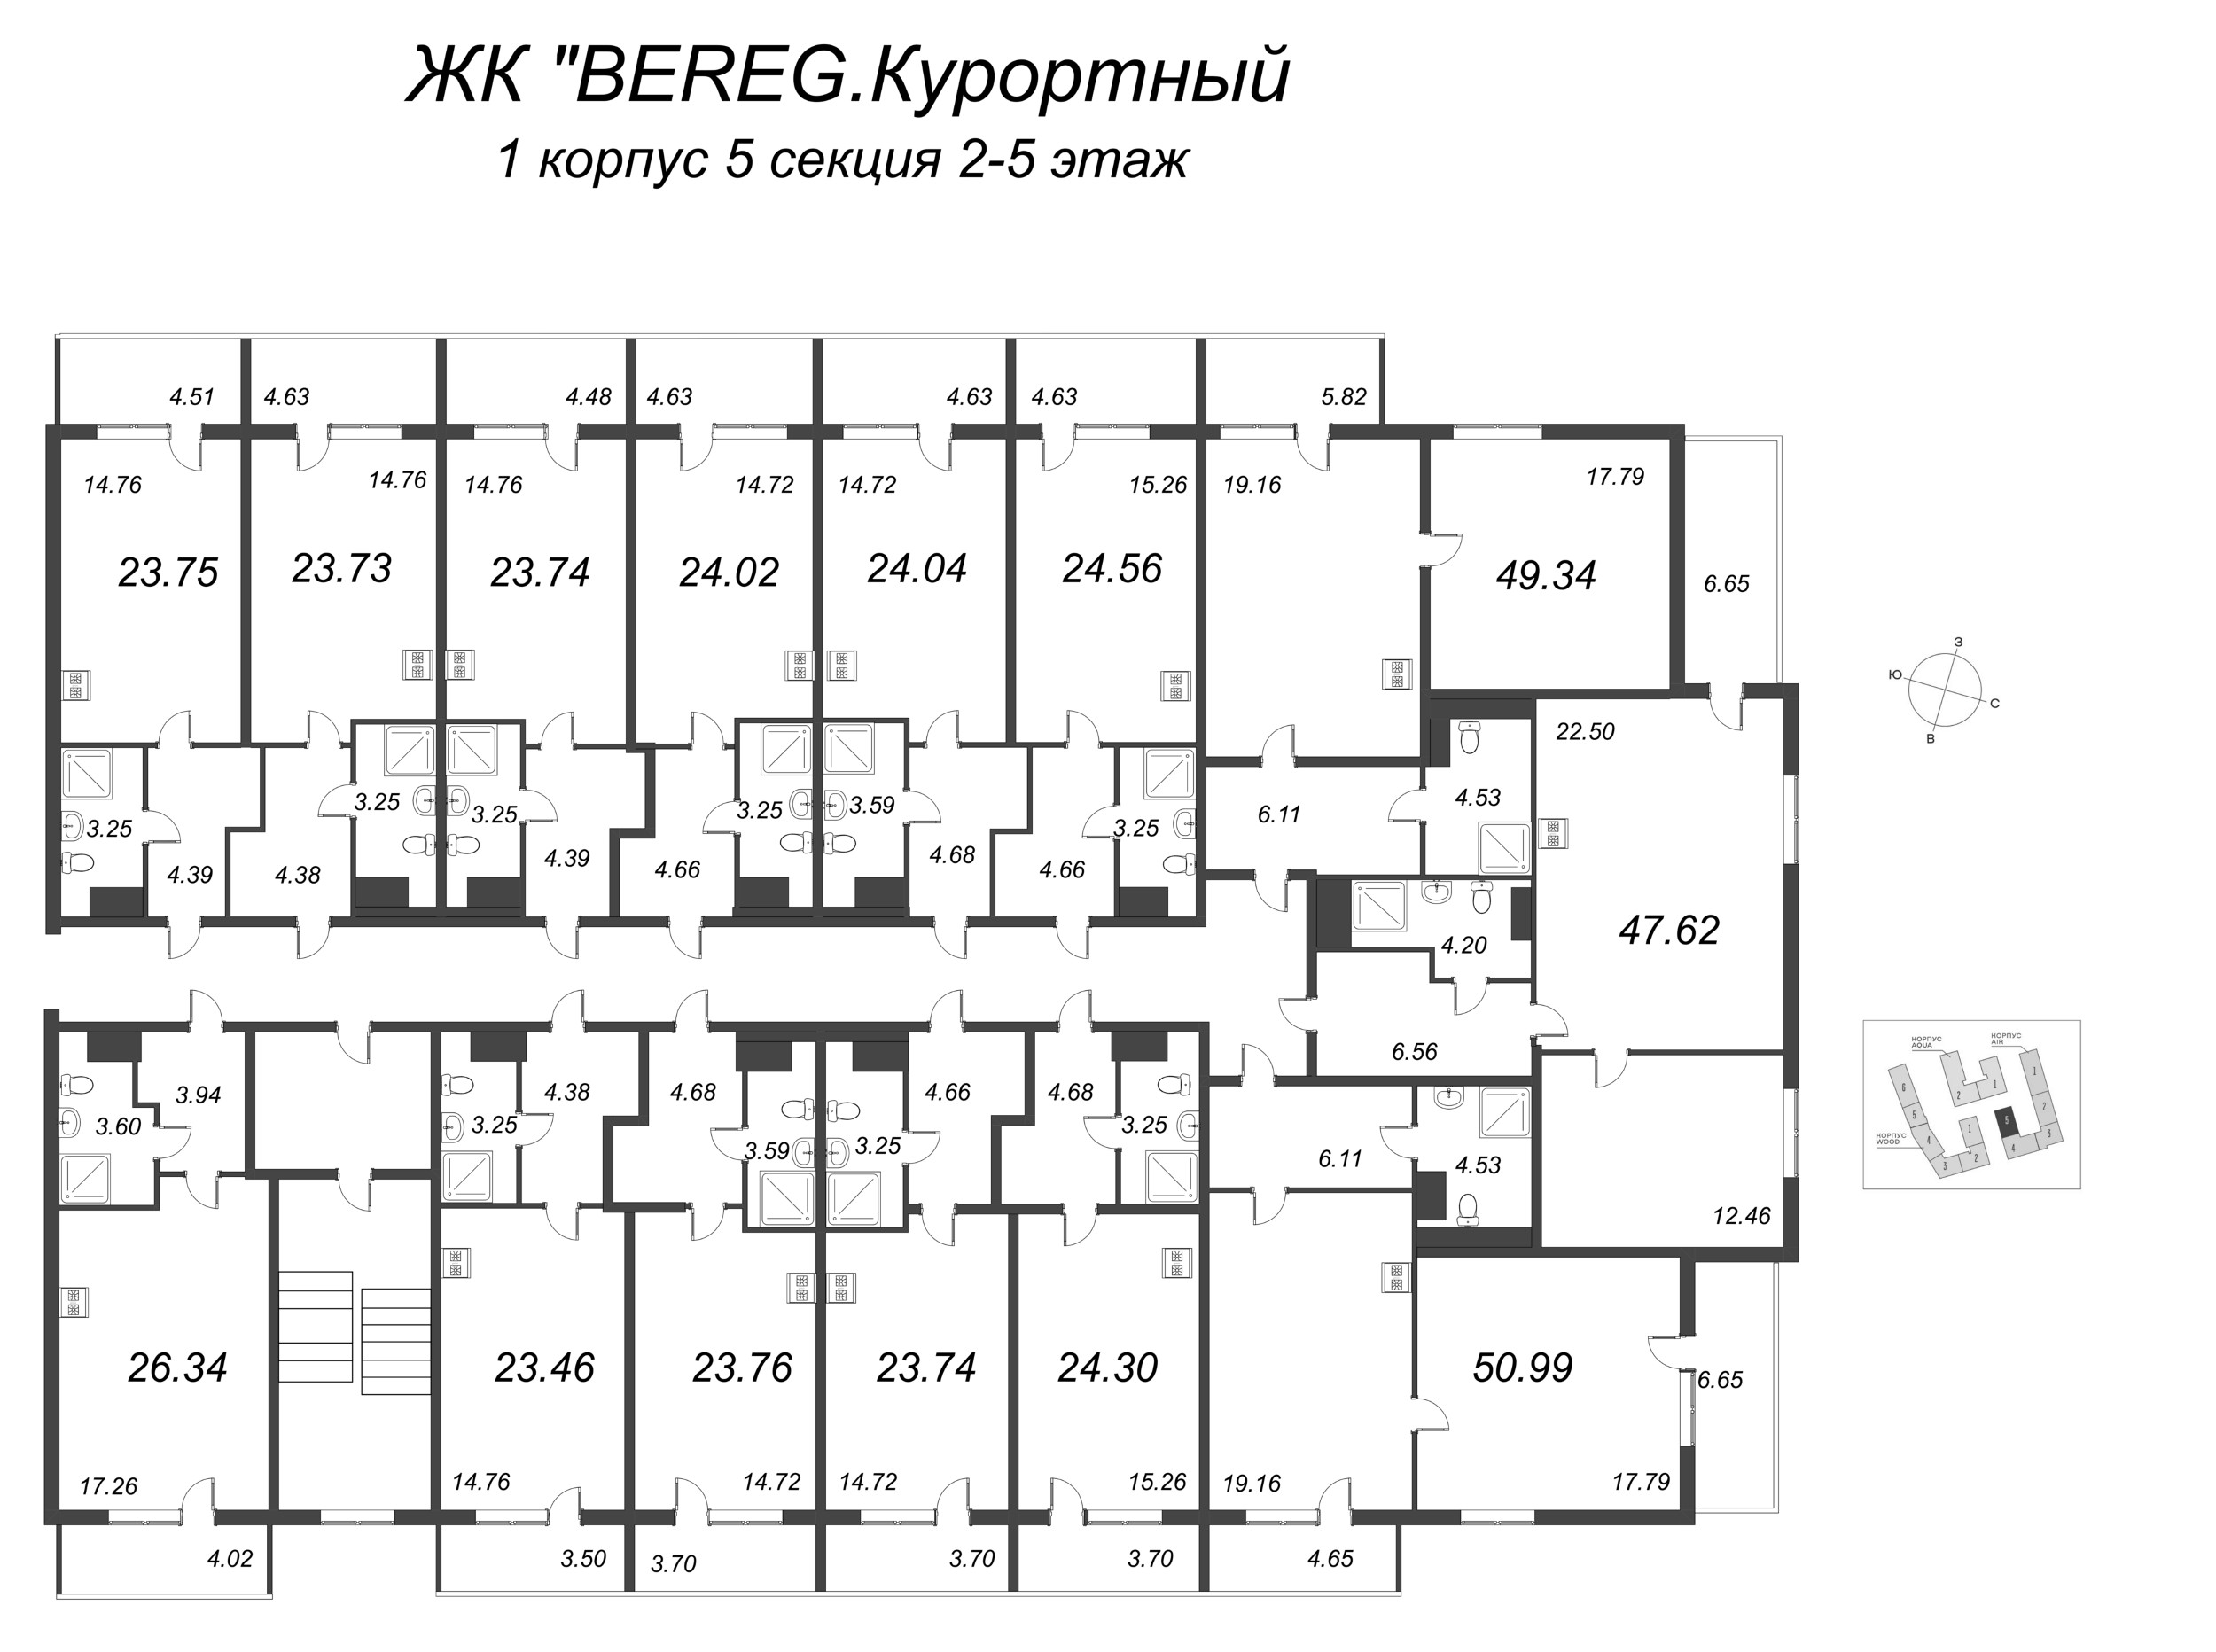 Квартира-студия, 24.56 м² в ЖК "Bereg. Курортный" - планировка этажа